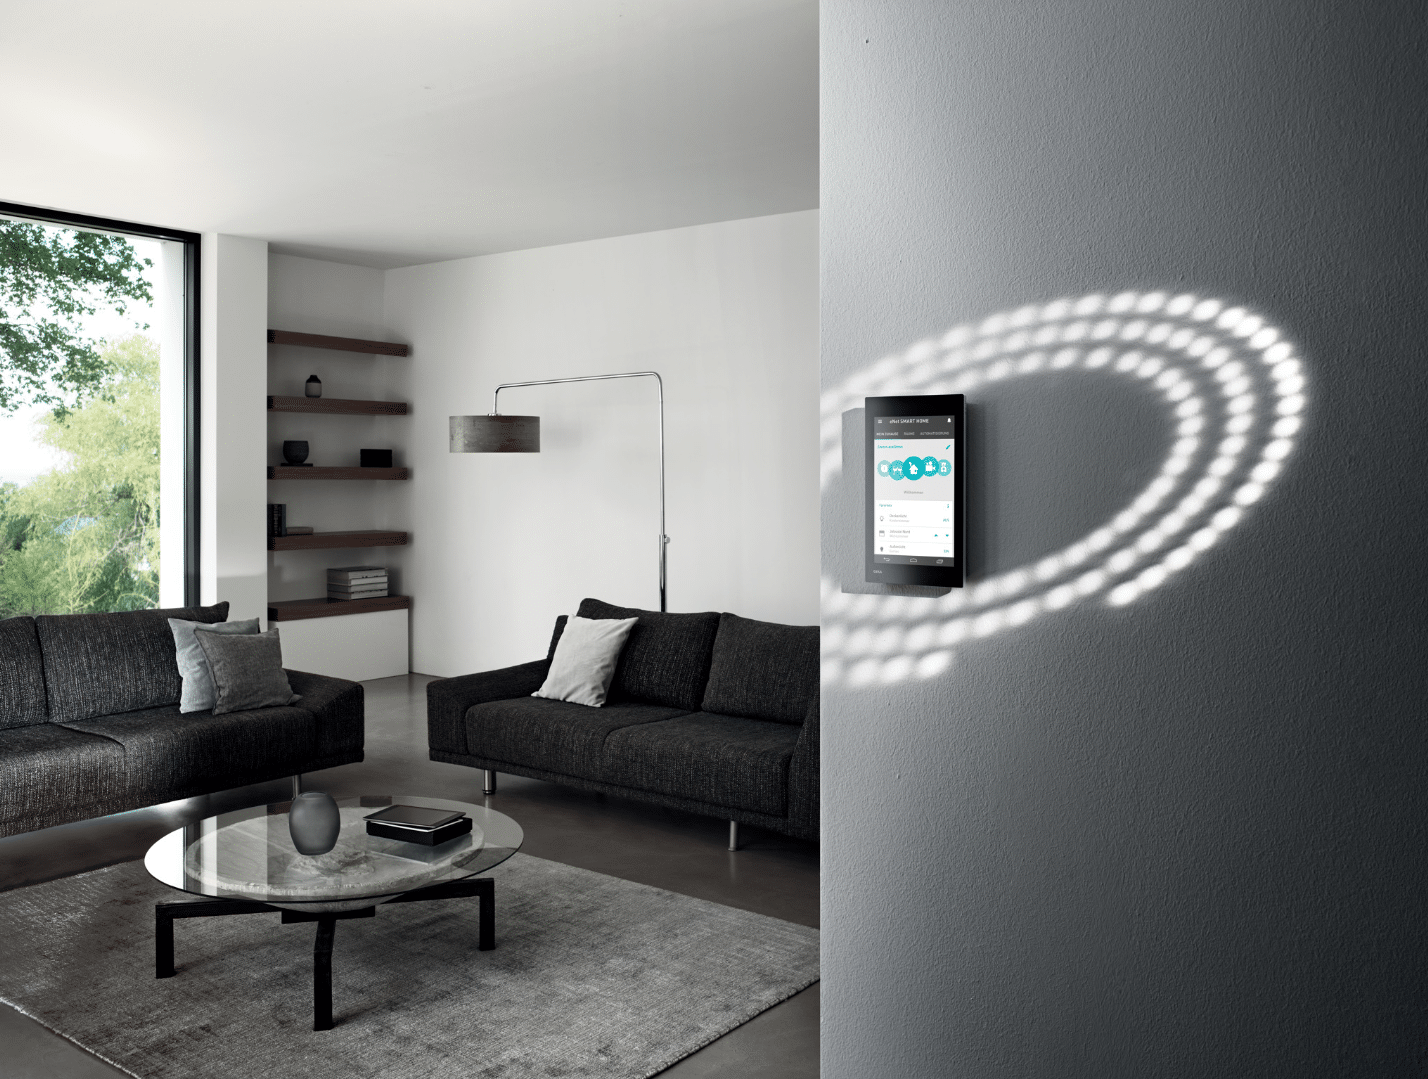 Gira zeigt das Wohnzimmer eines Smart Homes mit einer digitalen Bedieneinheit, in Augenhöhe an der Wand montiert.